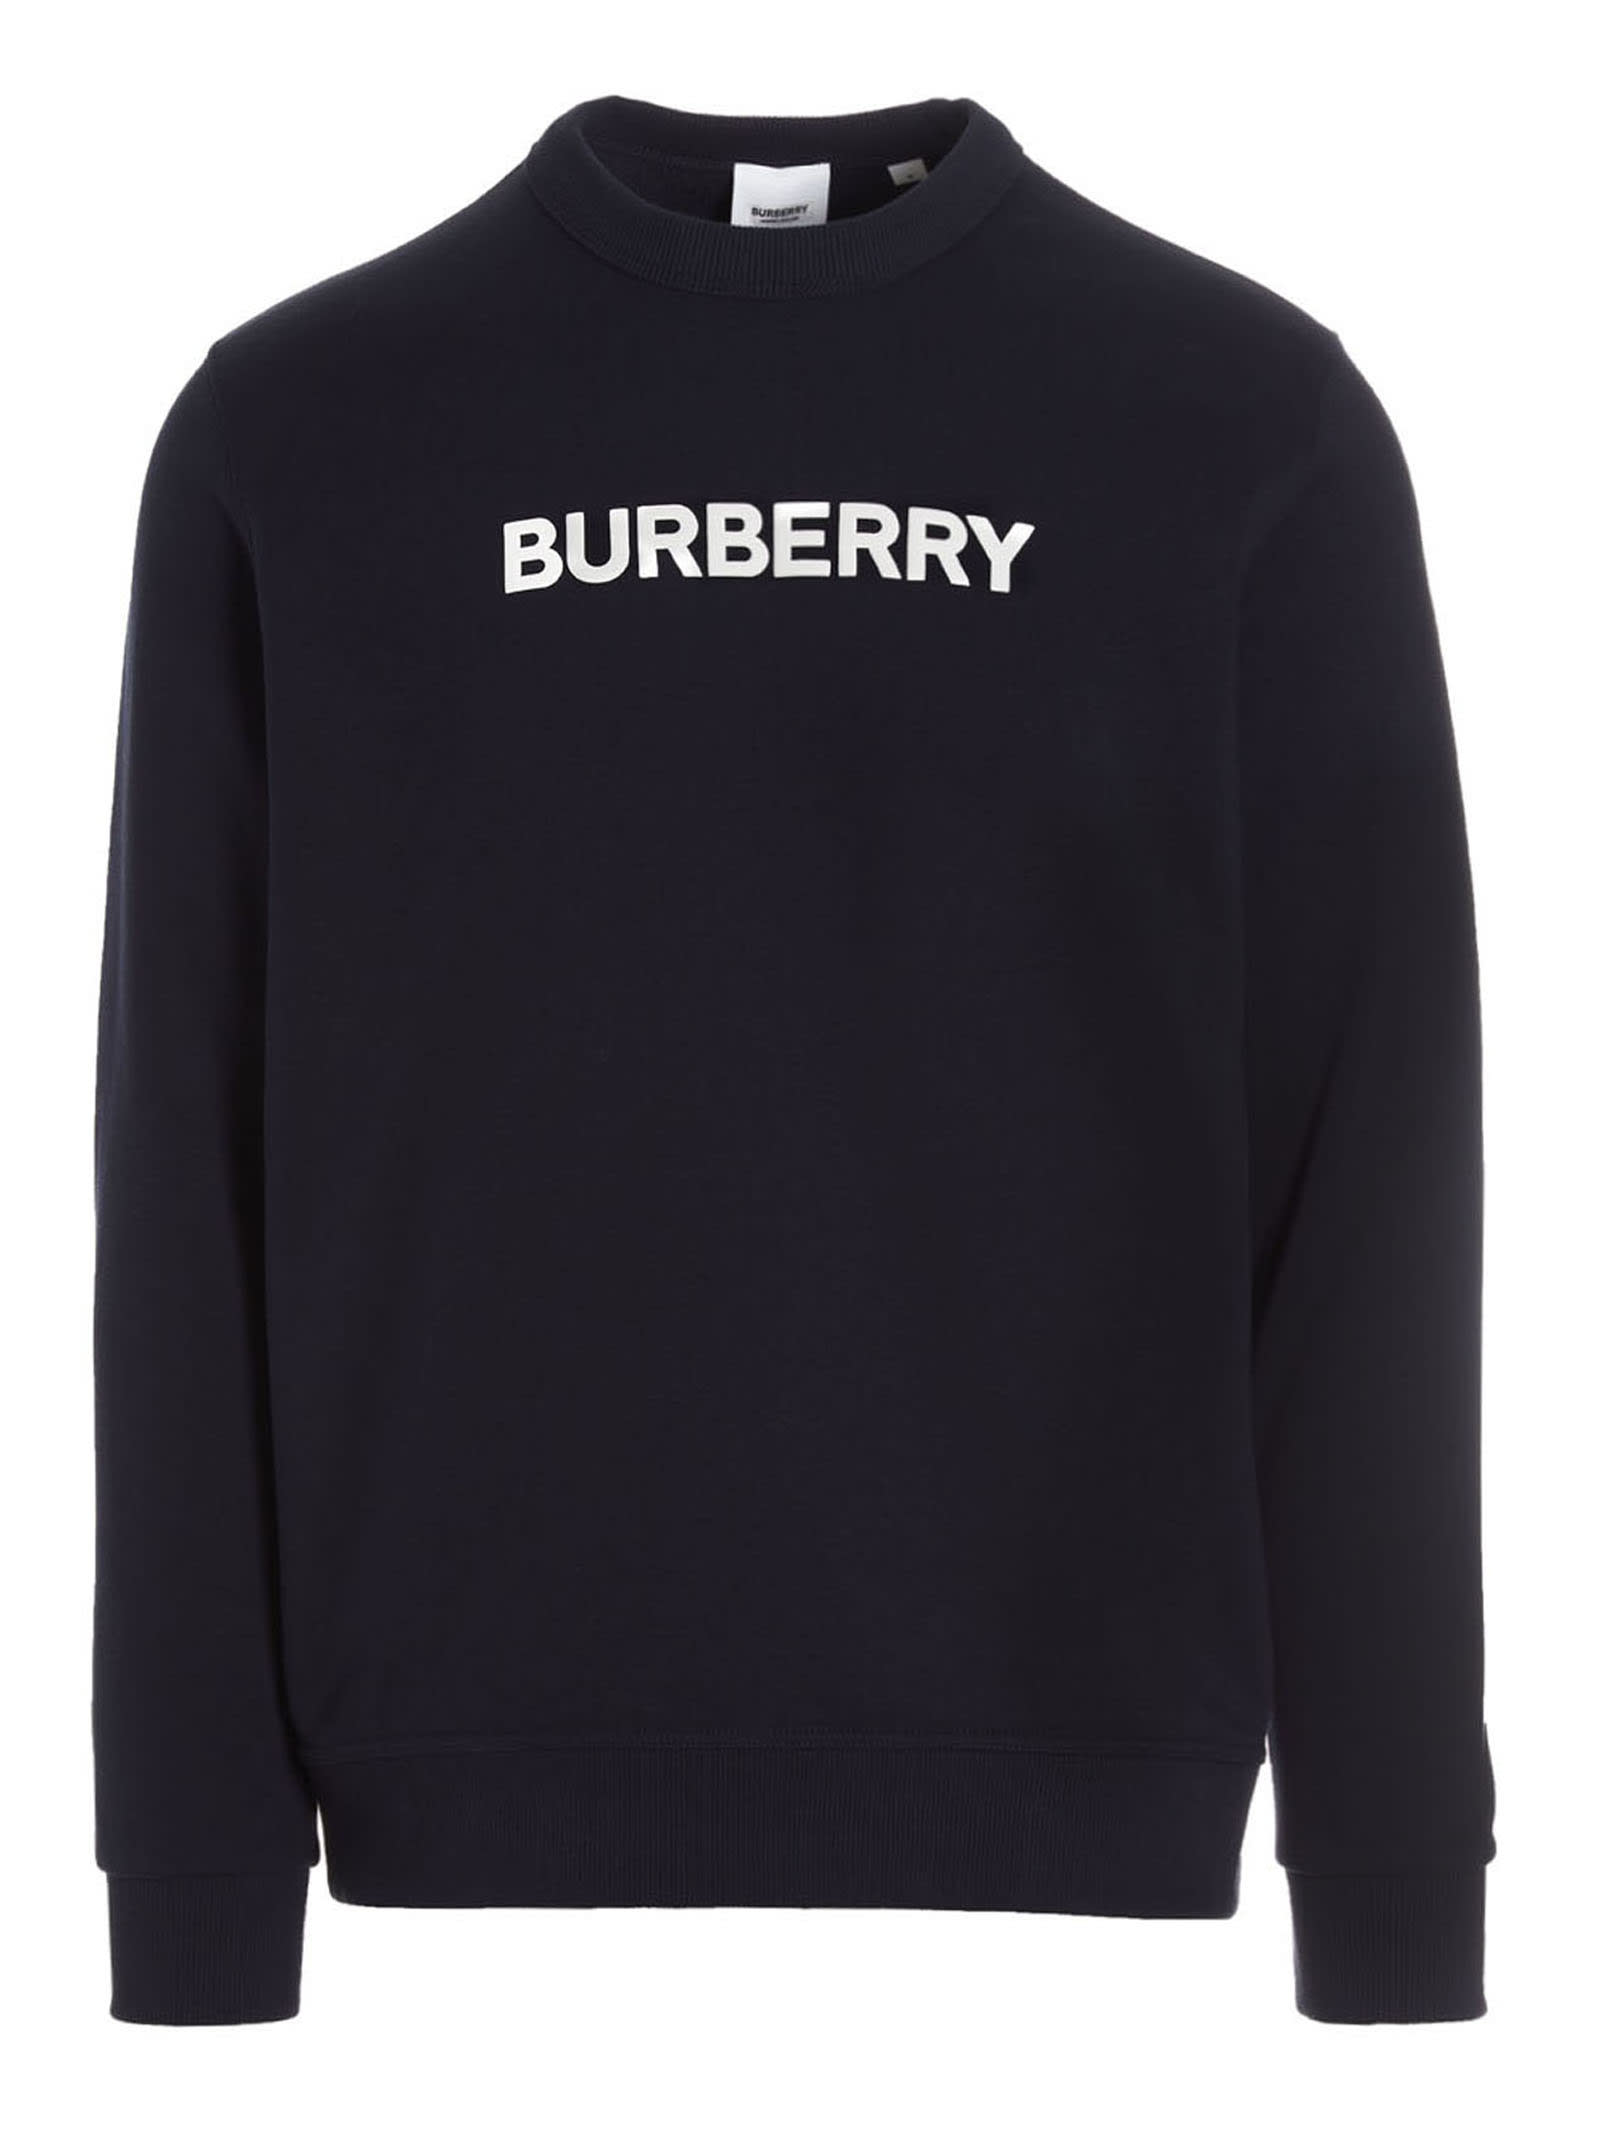 Burberry burlow Sweatshirt